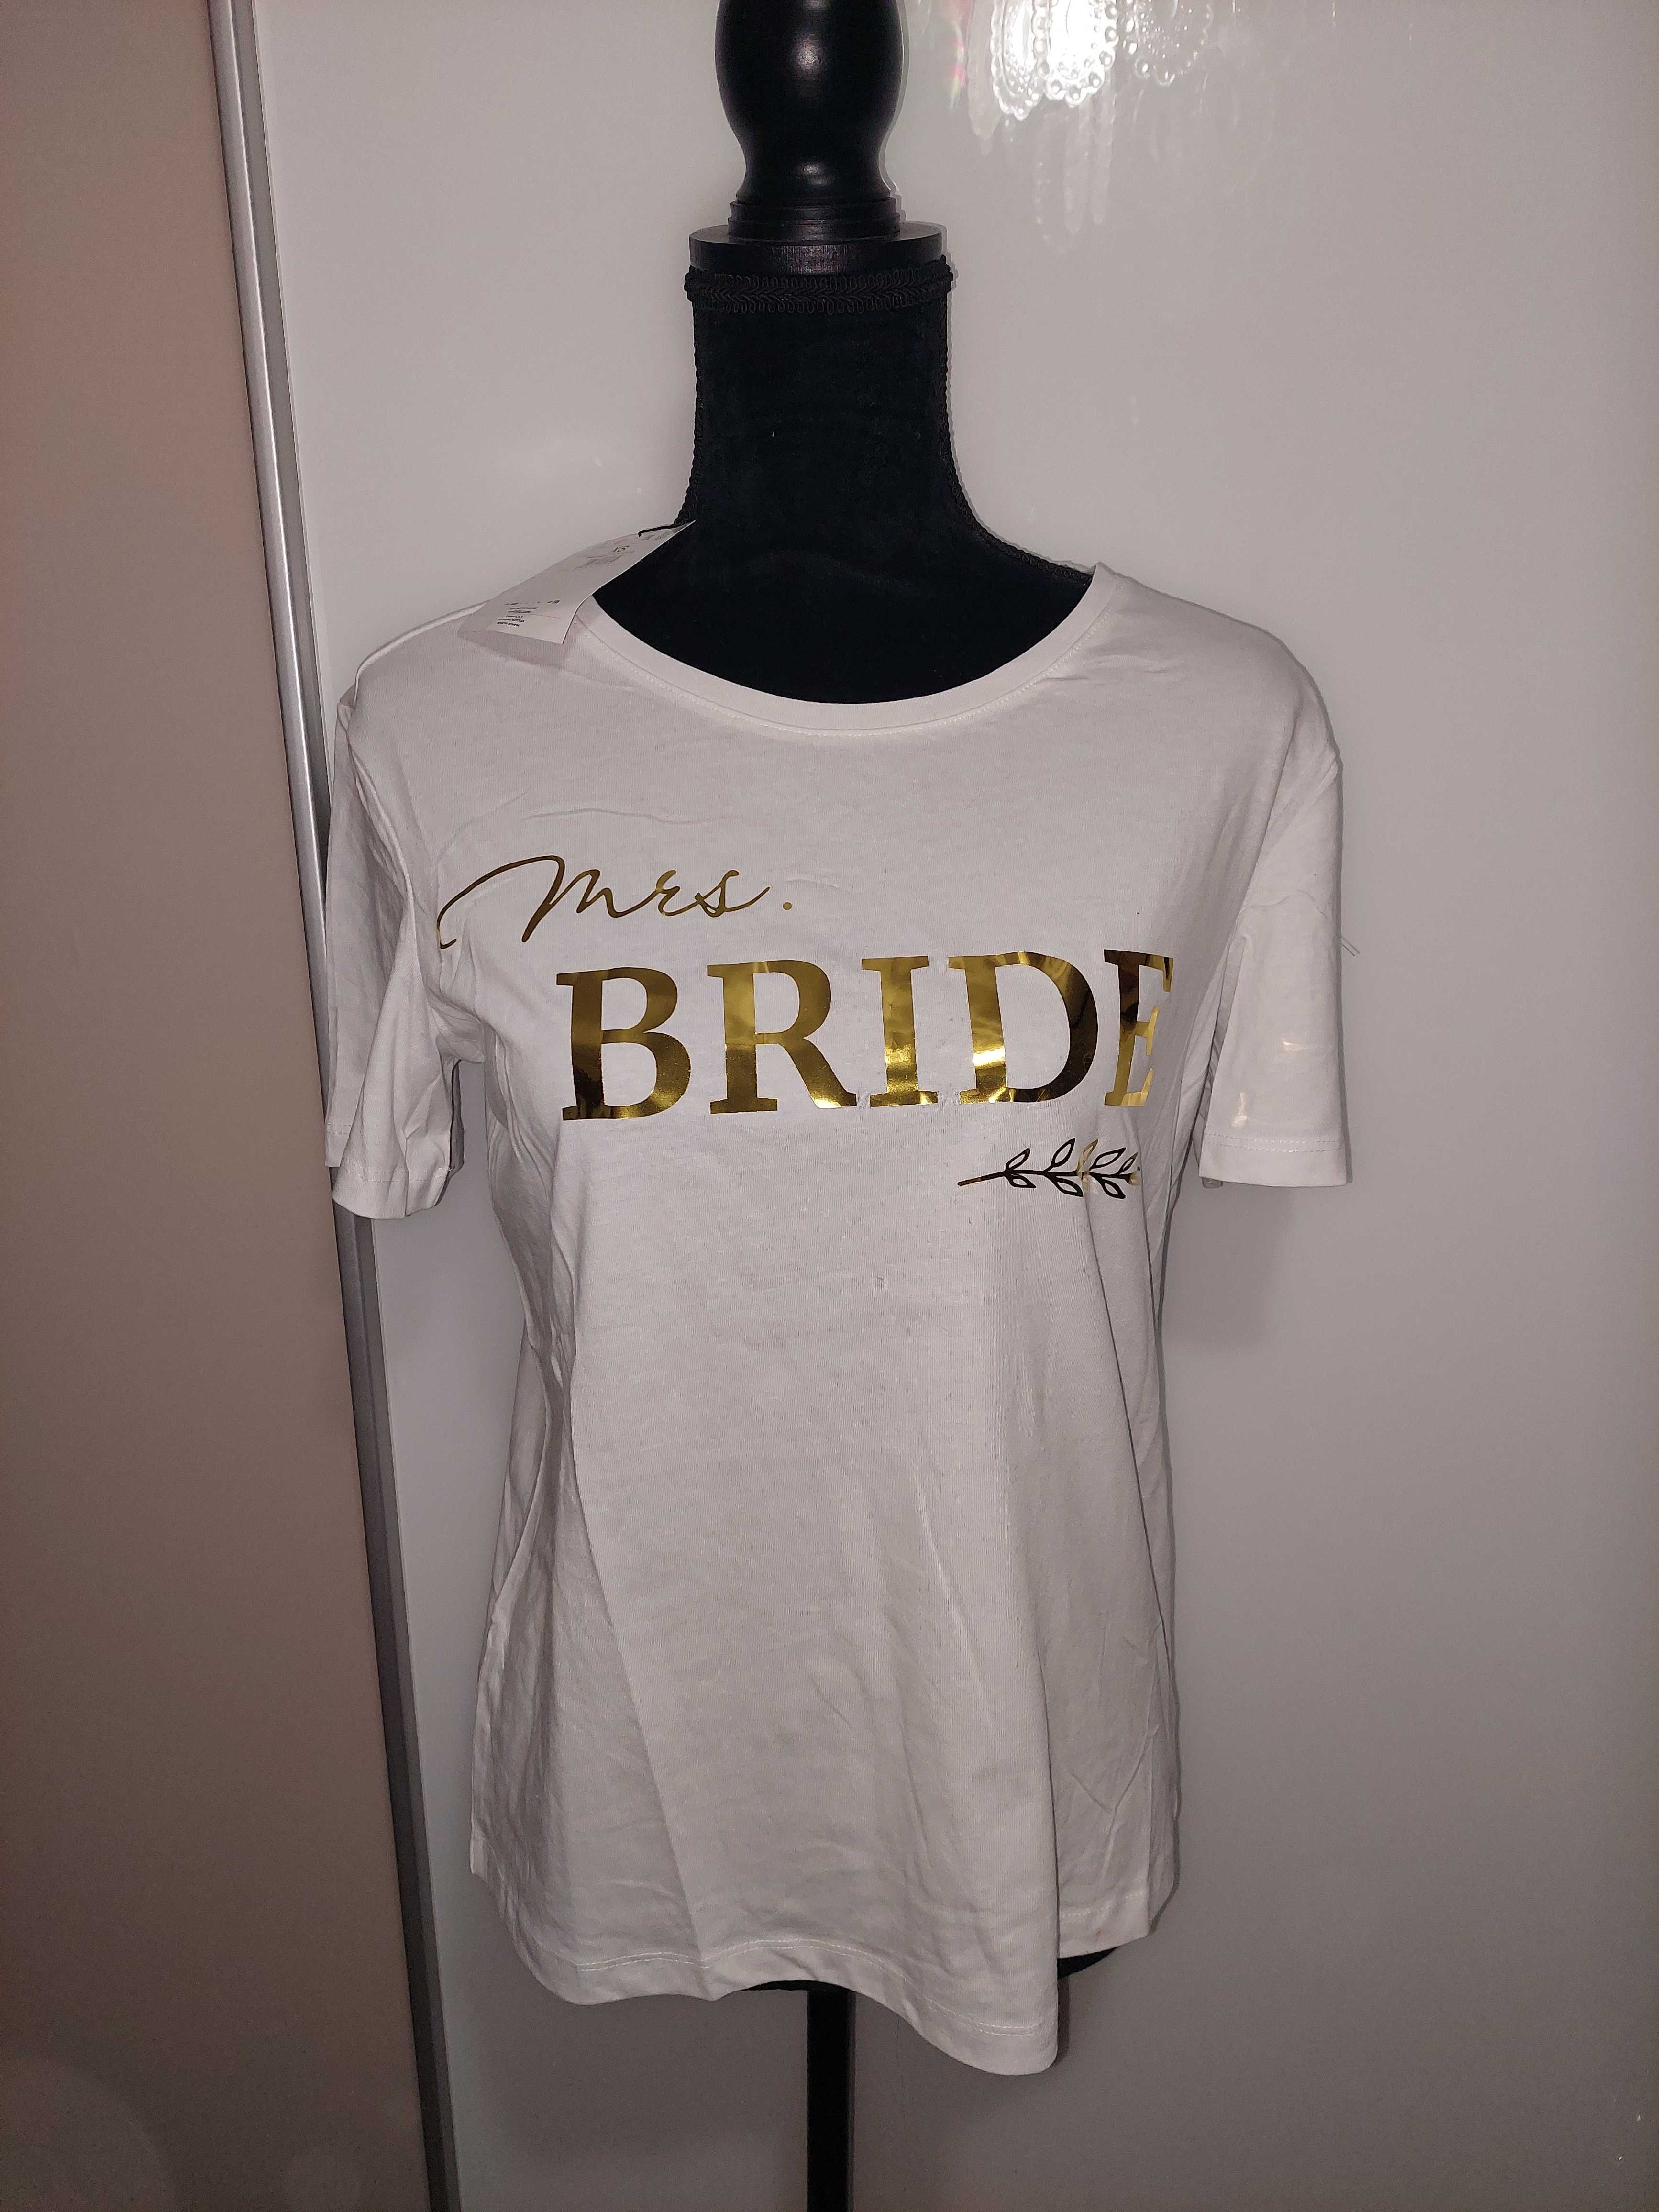 Tricou alb in imprimeu auriu Bride/mireasă, NOU